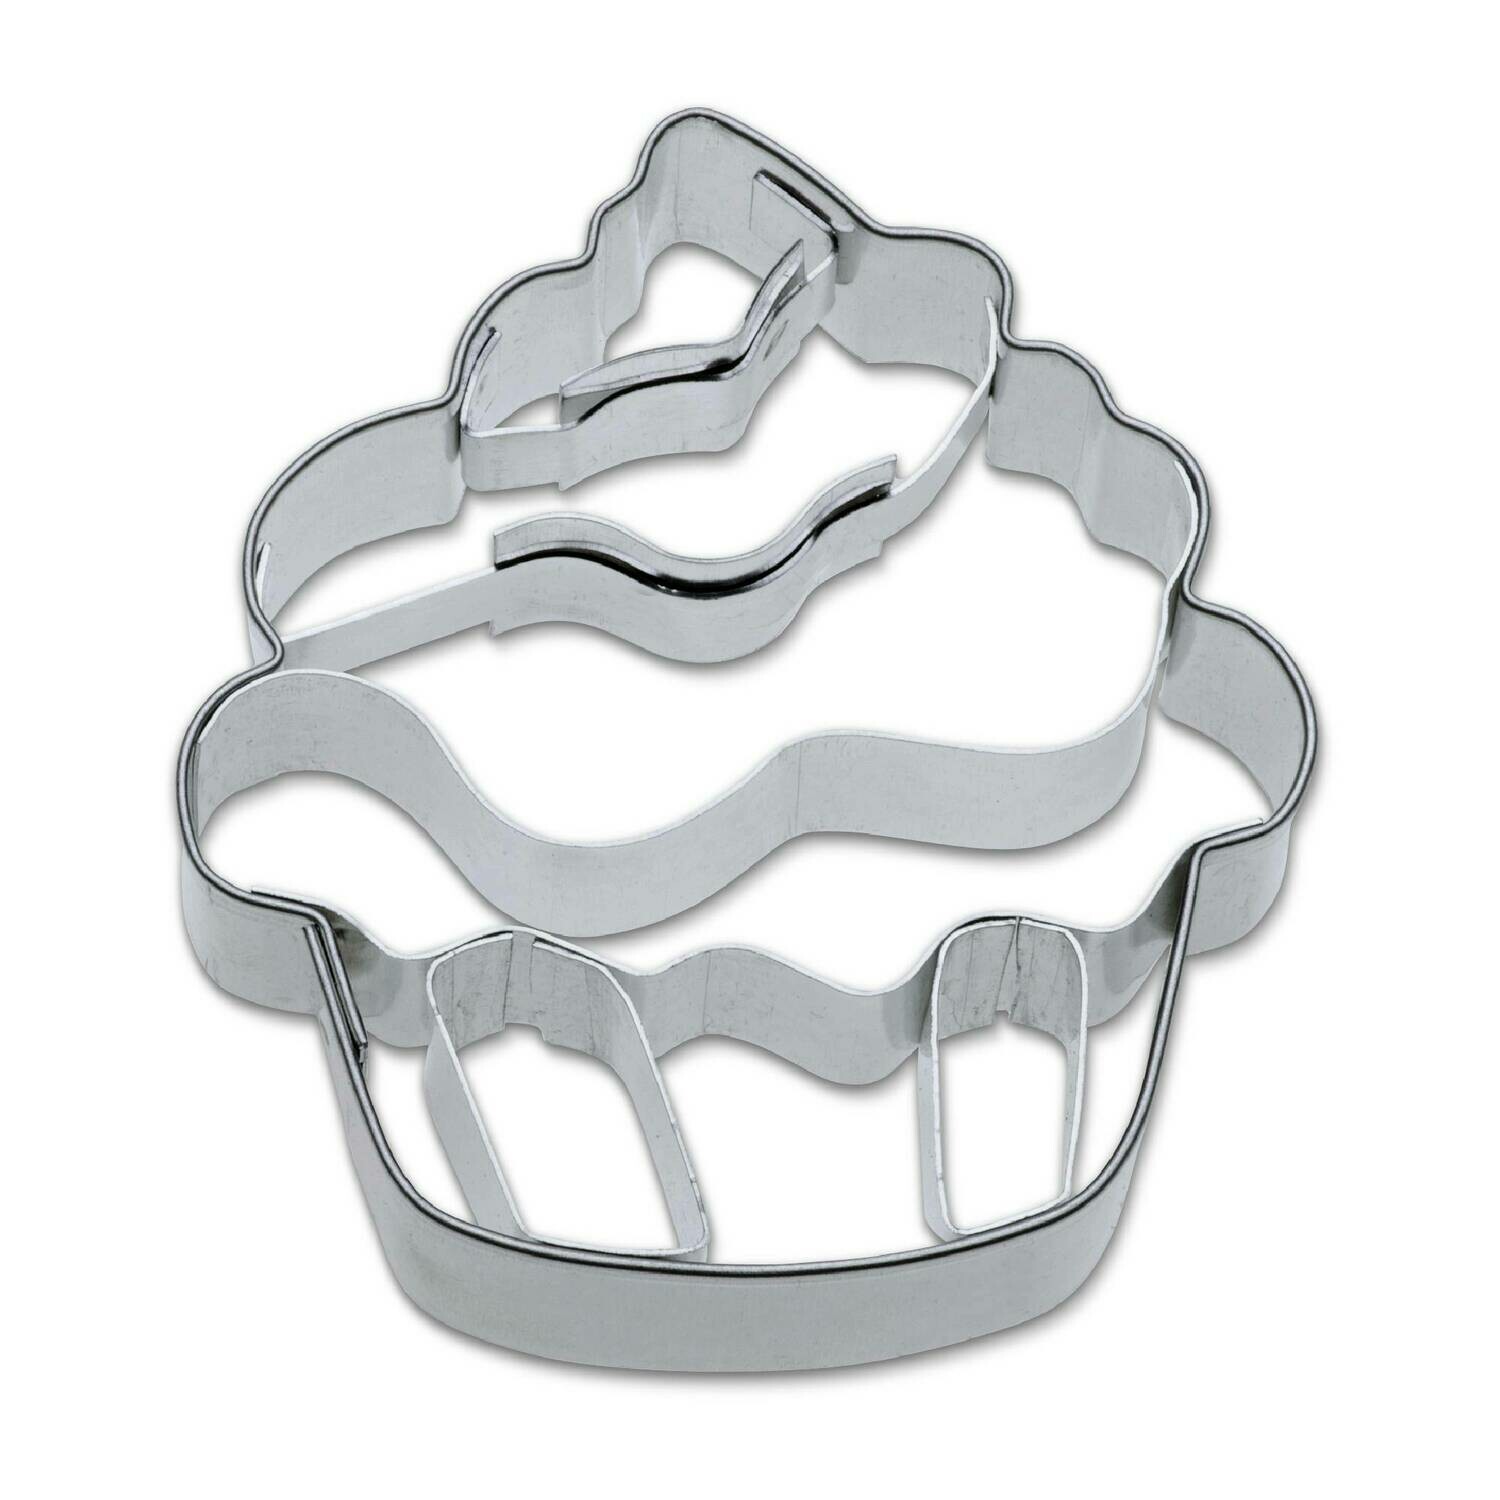 Städter Präge-Ausstecher Muffin / Cupcake - 5,5 cm